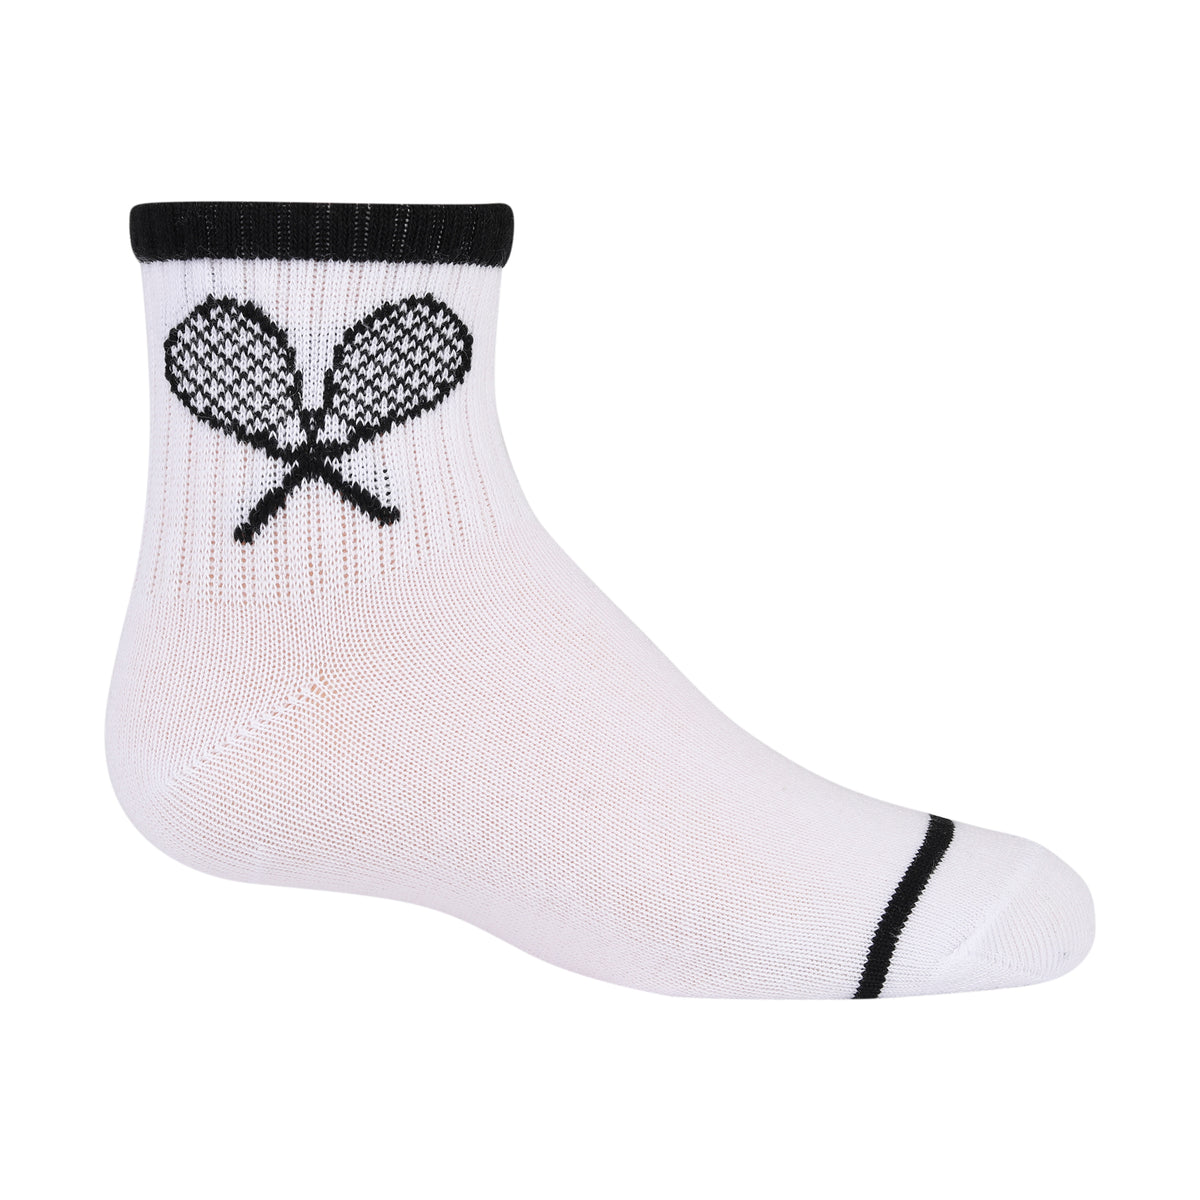 Buy Gilbin ic Socks, Ultra Light, 12pair, Ankle/White Size 10-13